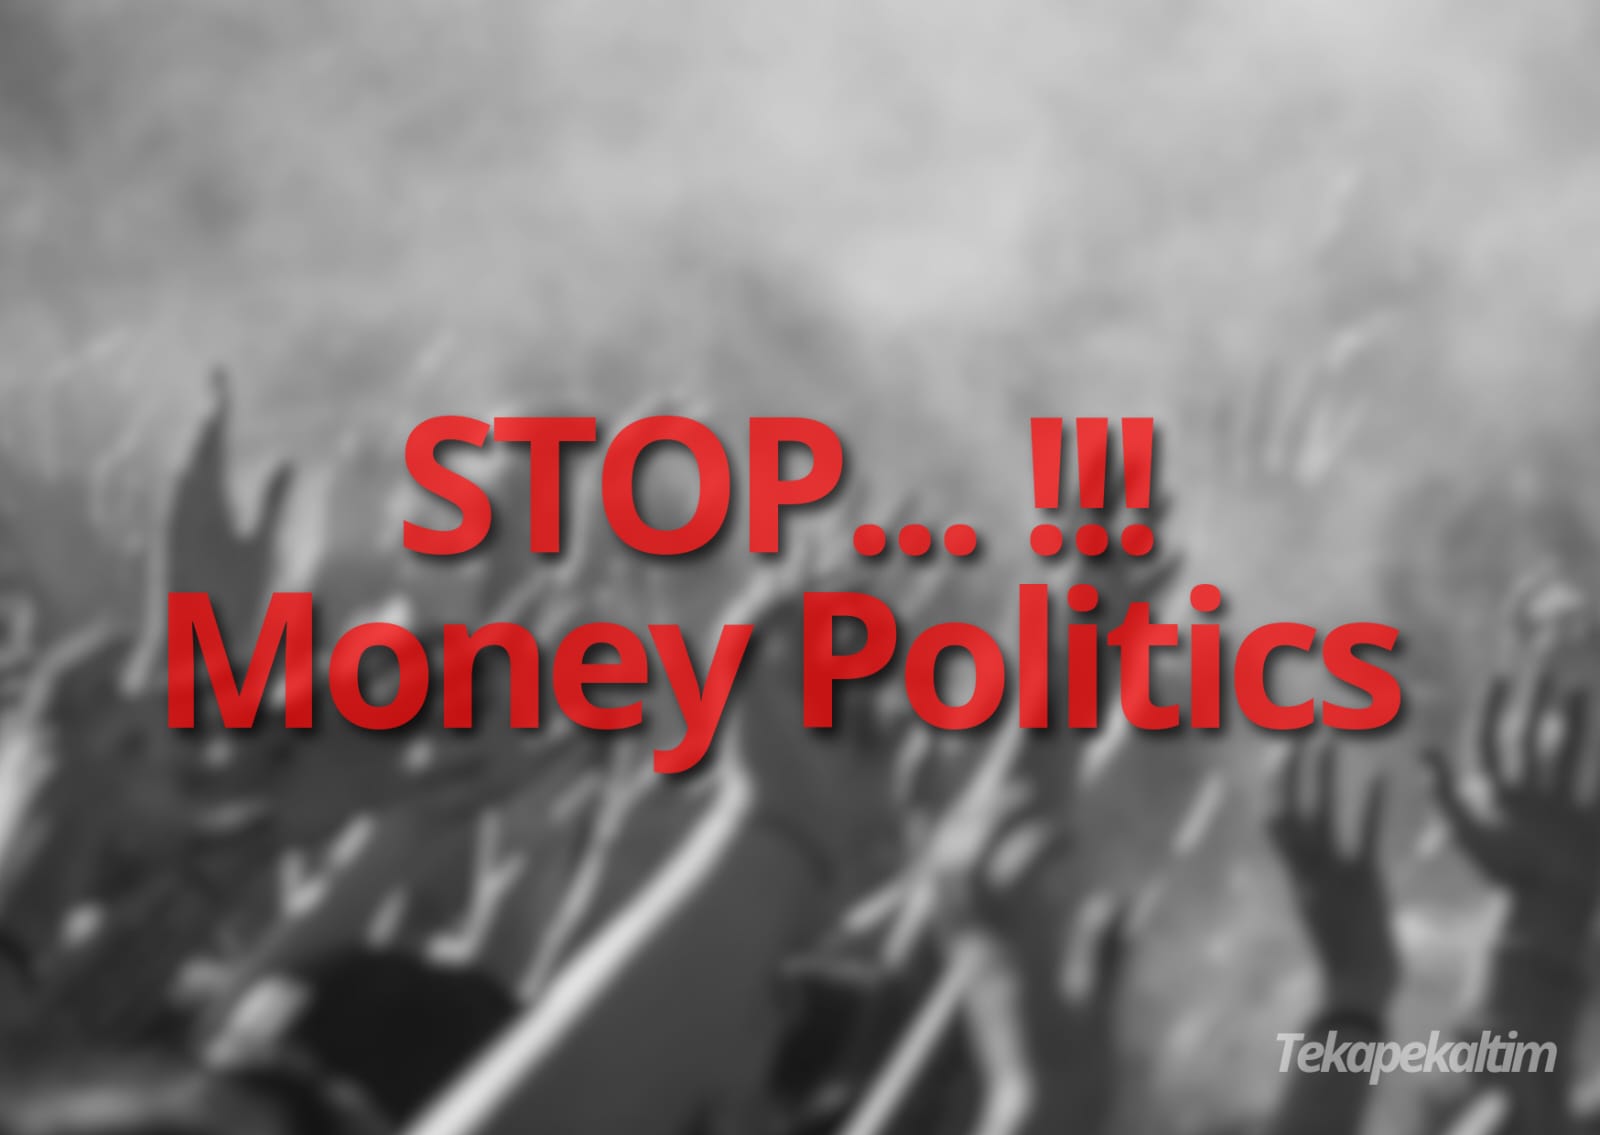 DPRD Kaltim tegaskan jangan ada politik uang (dok: Tekapekaltim)